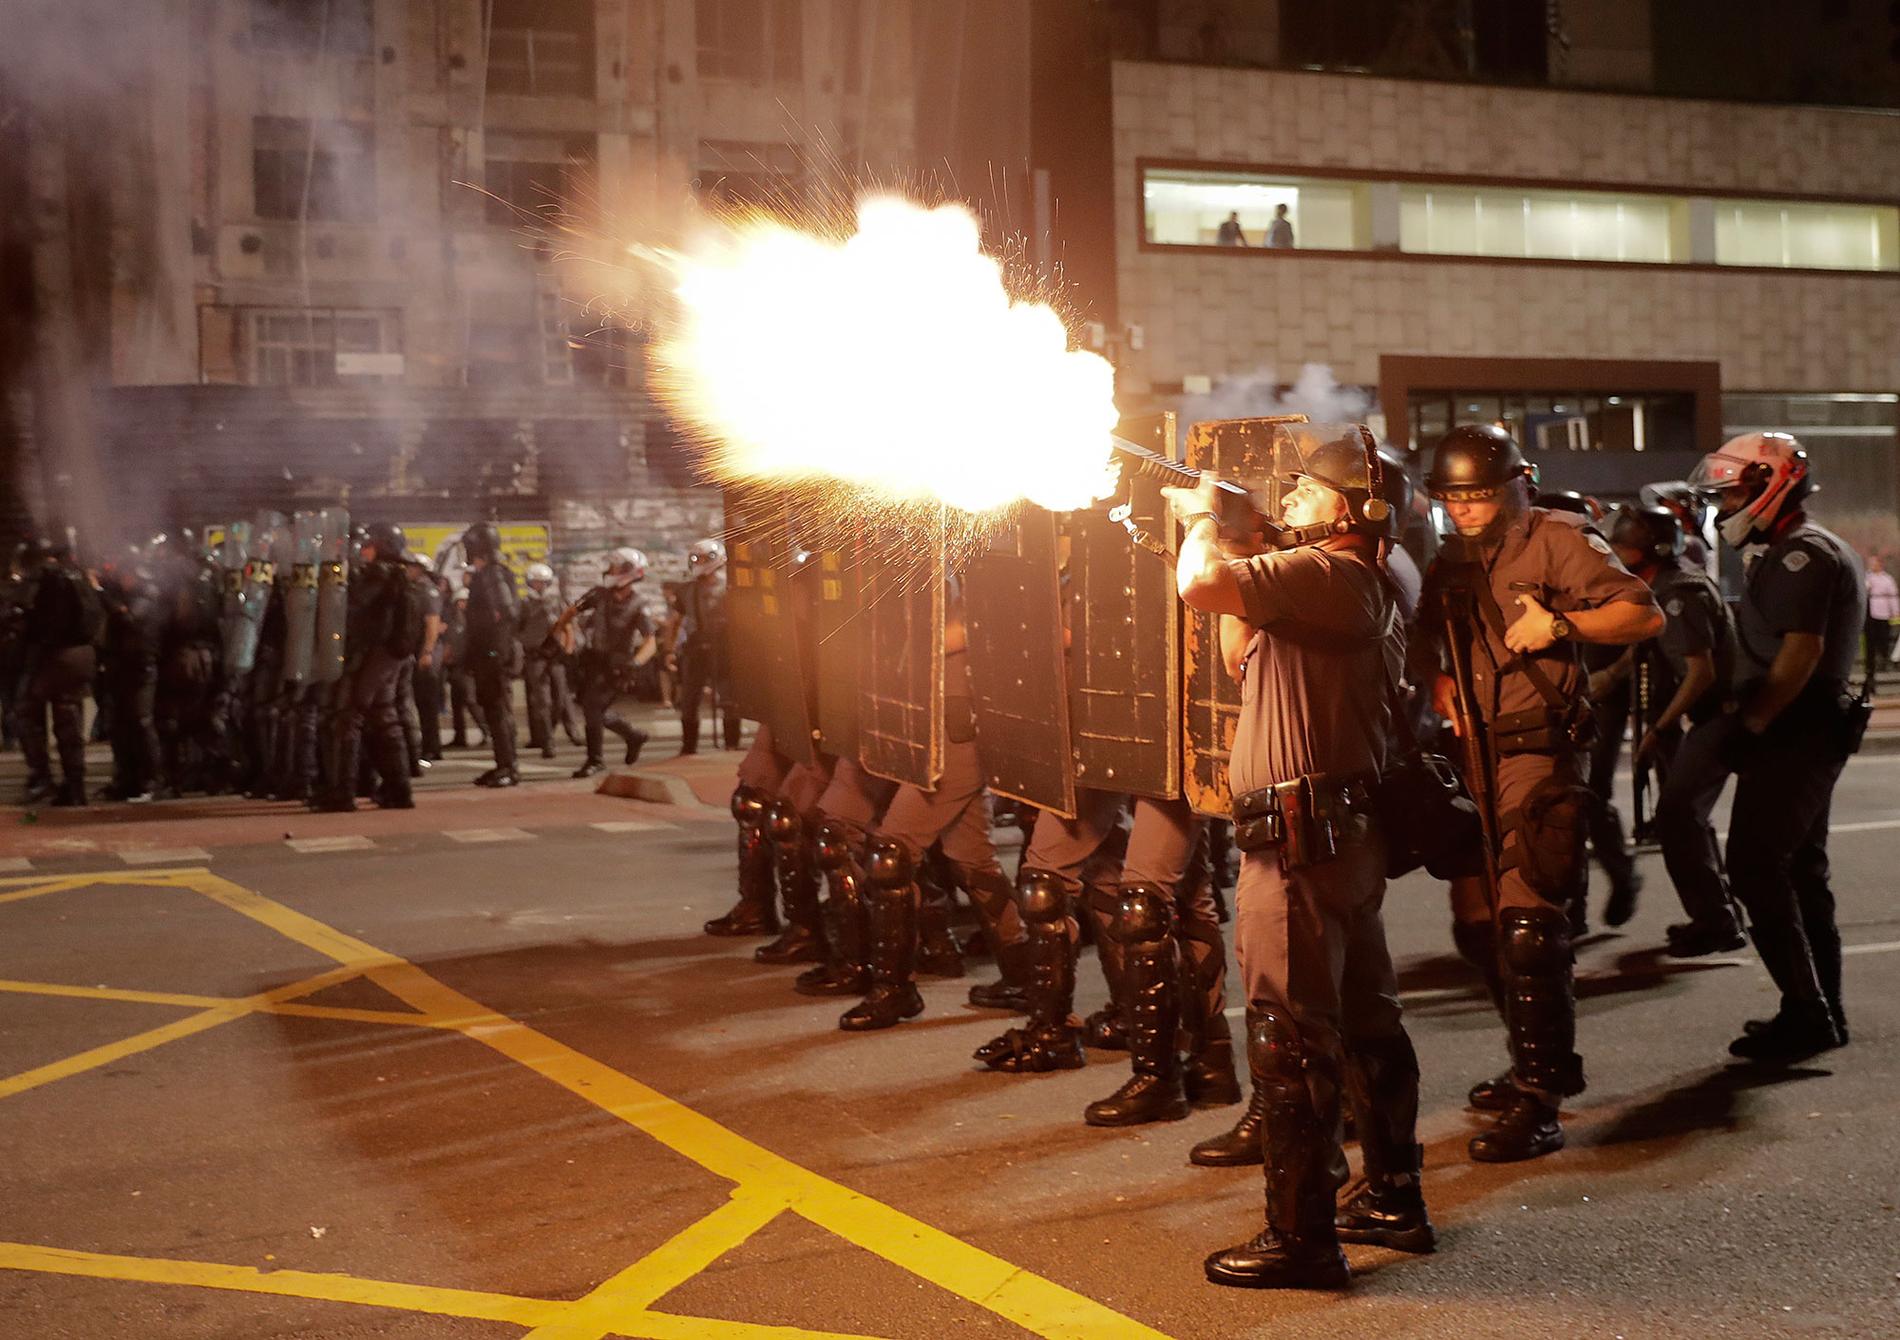 Polis avfyrar tårgas mot anhängare till Dilma Rousseff under en demonstration i Sao Paulo på måndagen.